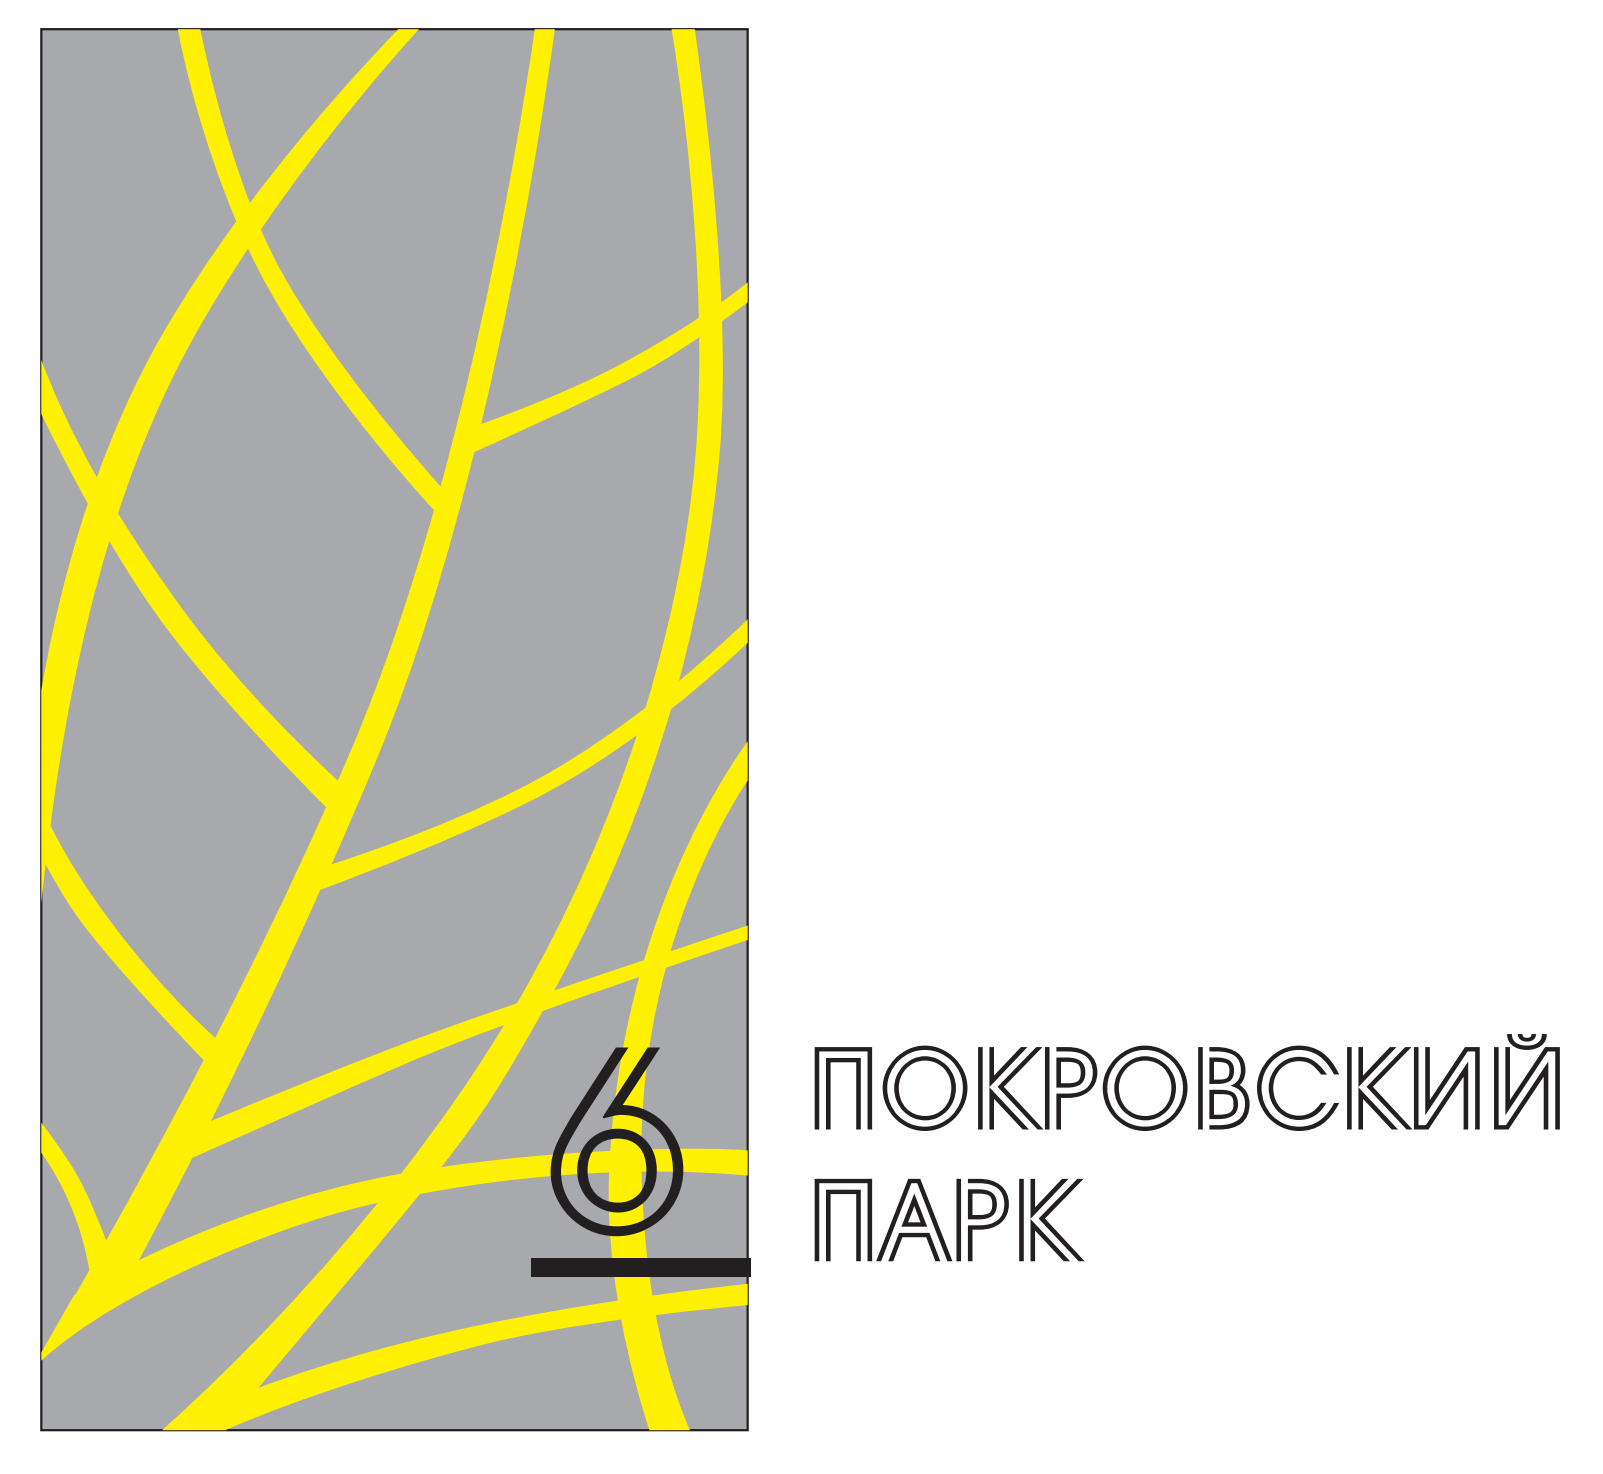 Вариант логотипа ЖК «Покровский парк»